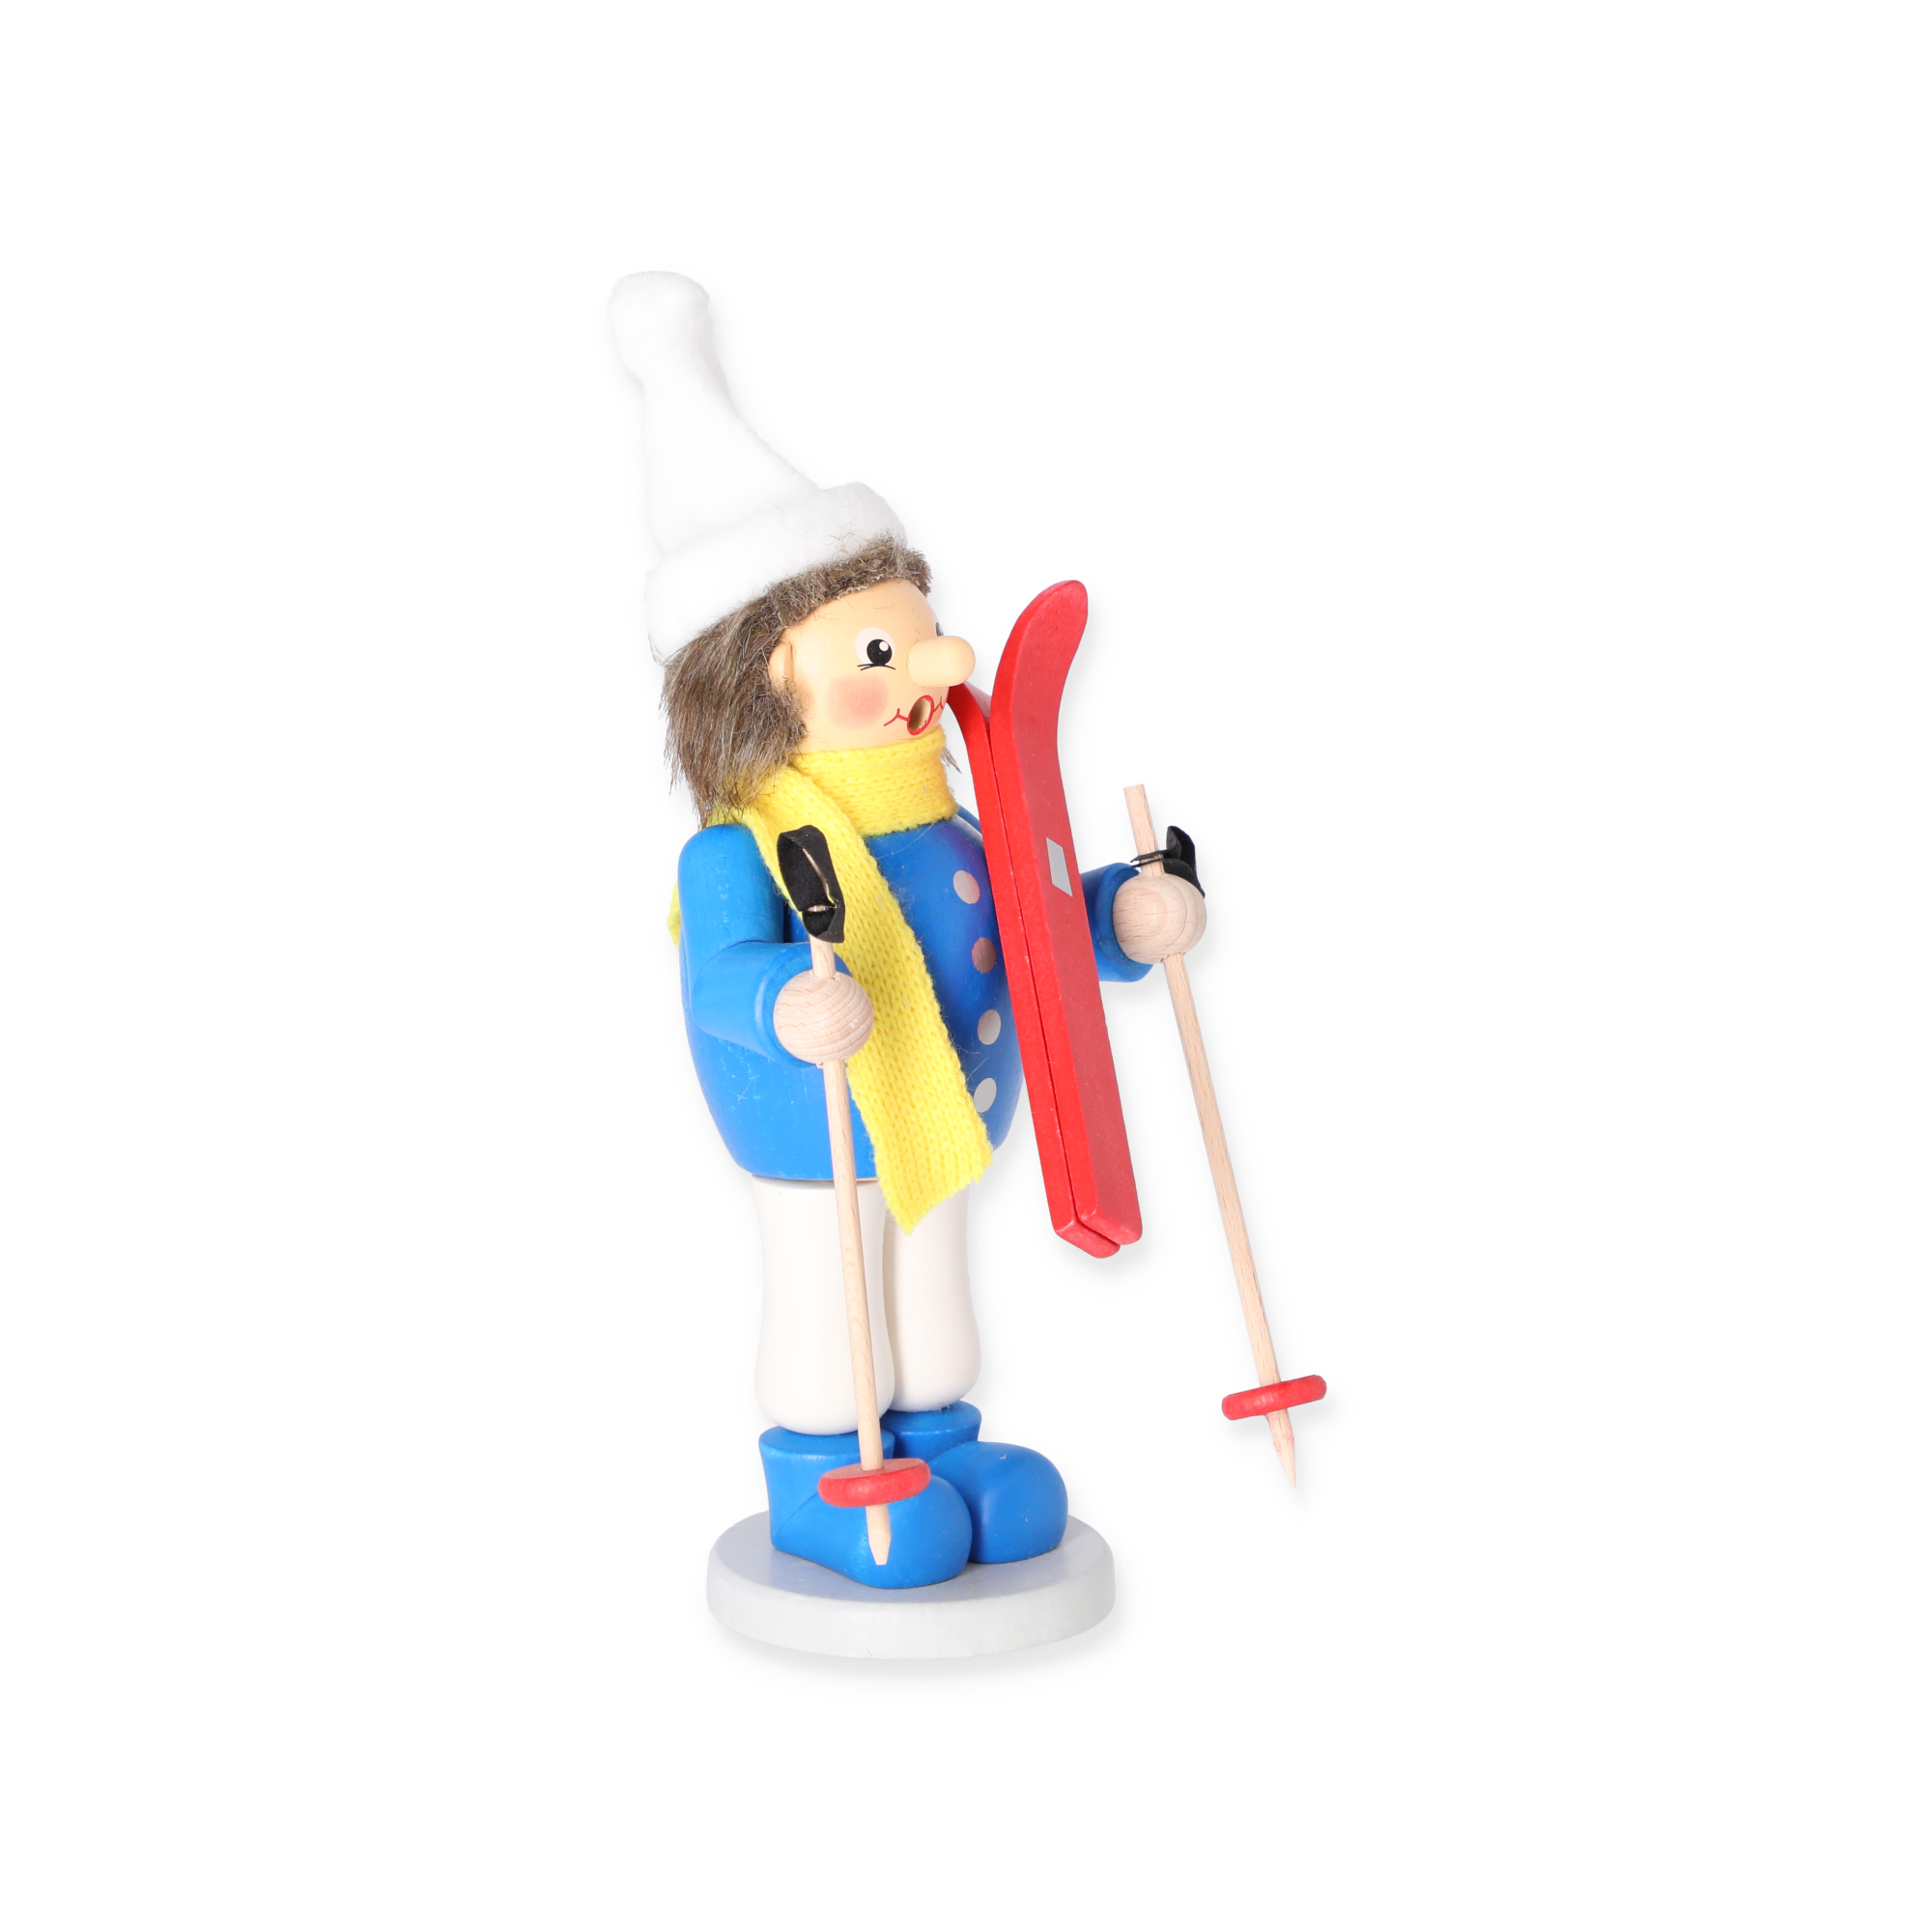 Räucherfigur 'Junge mit Ski' bunt 23 cm + product picture